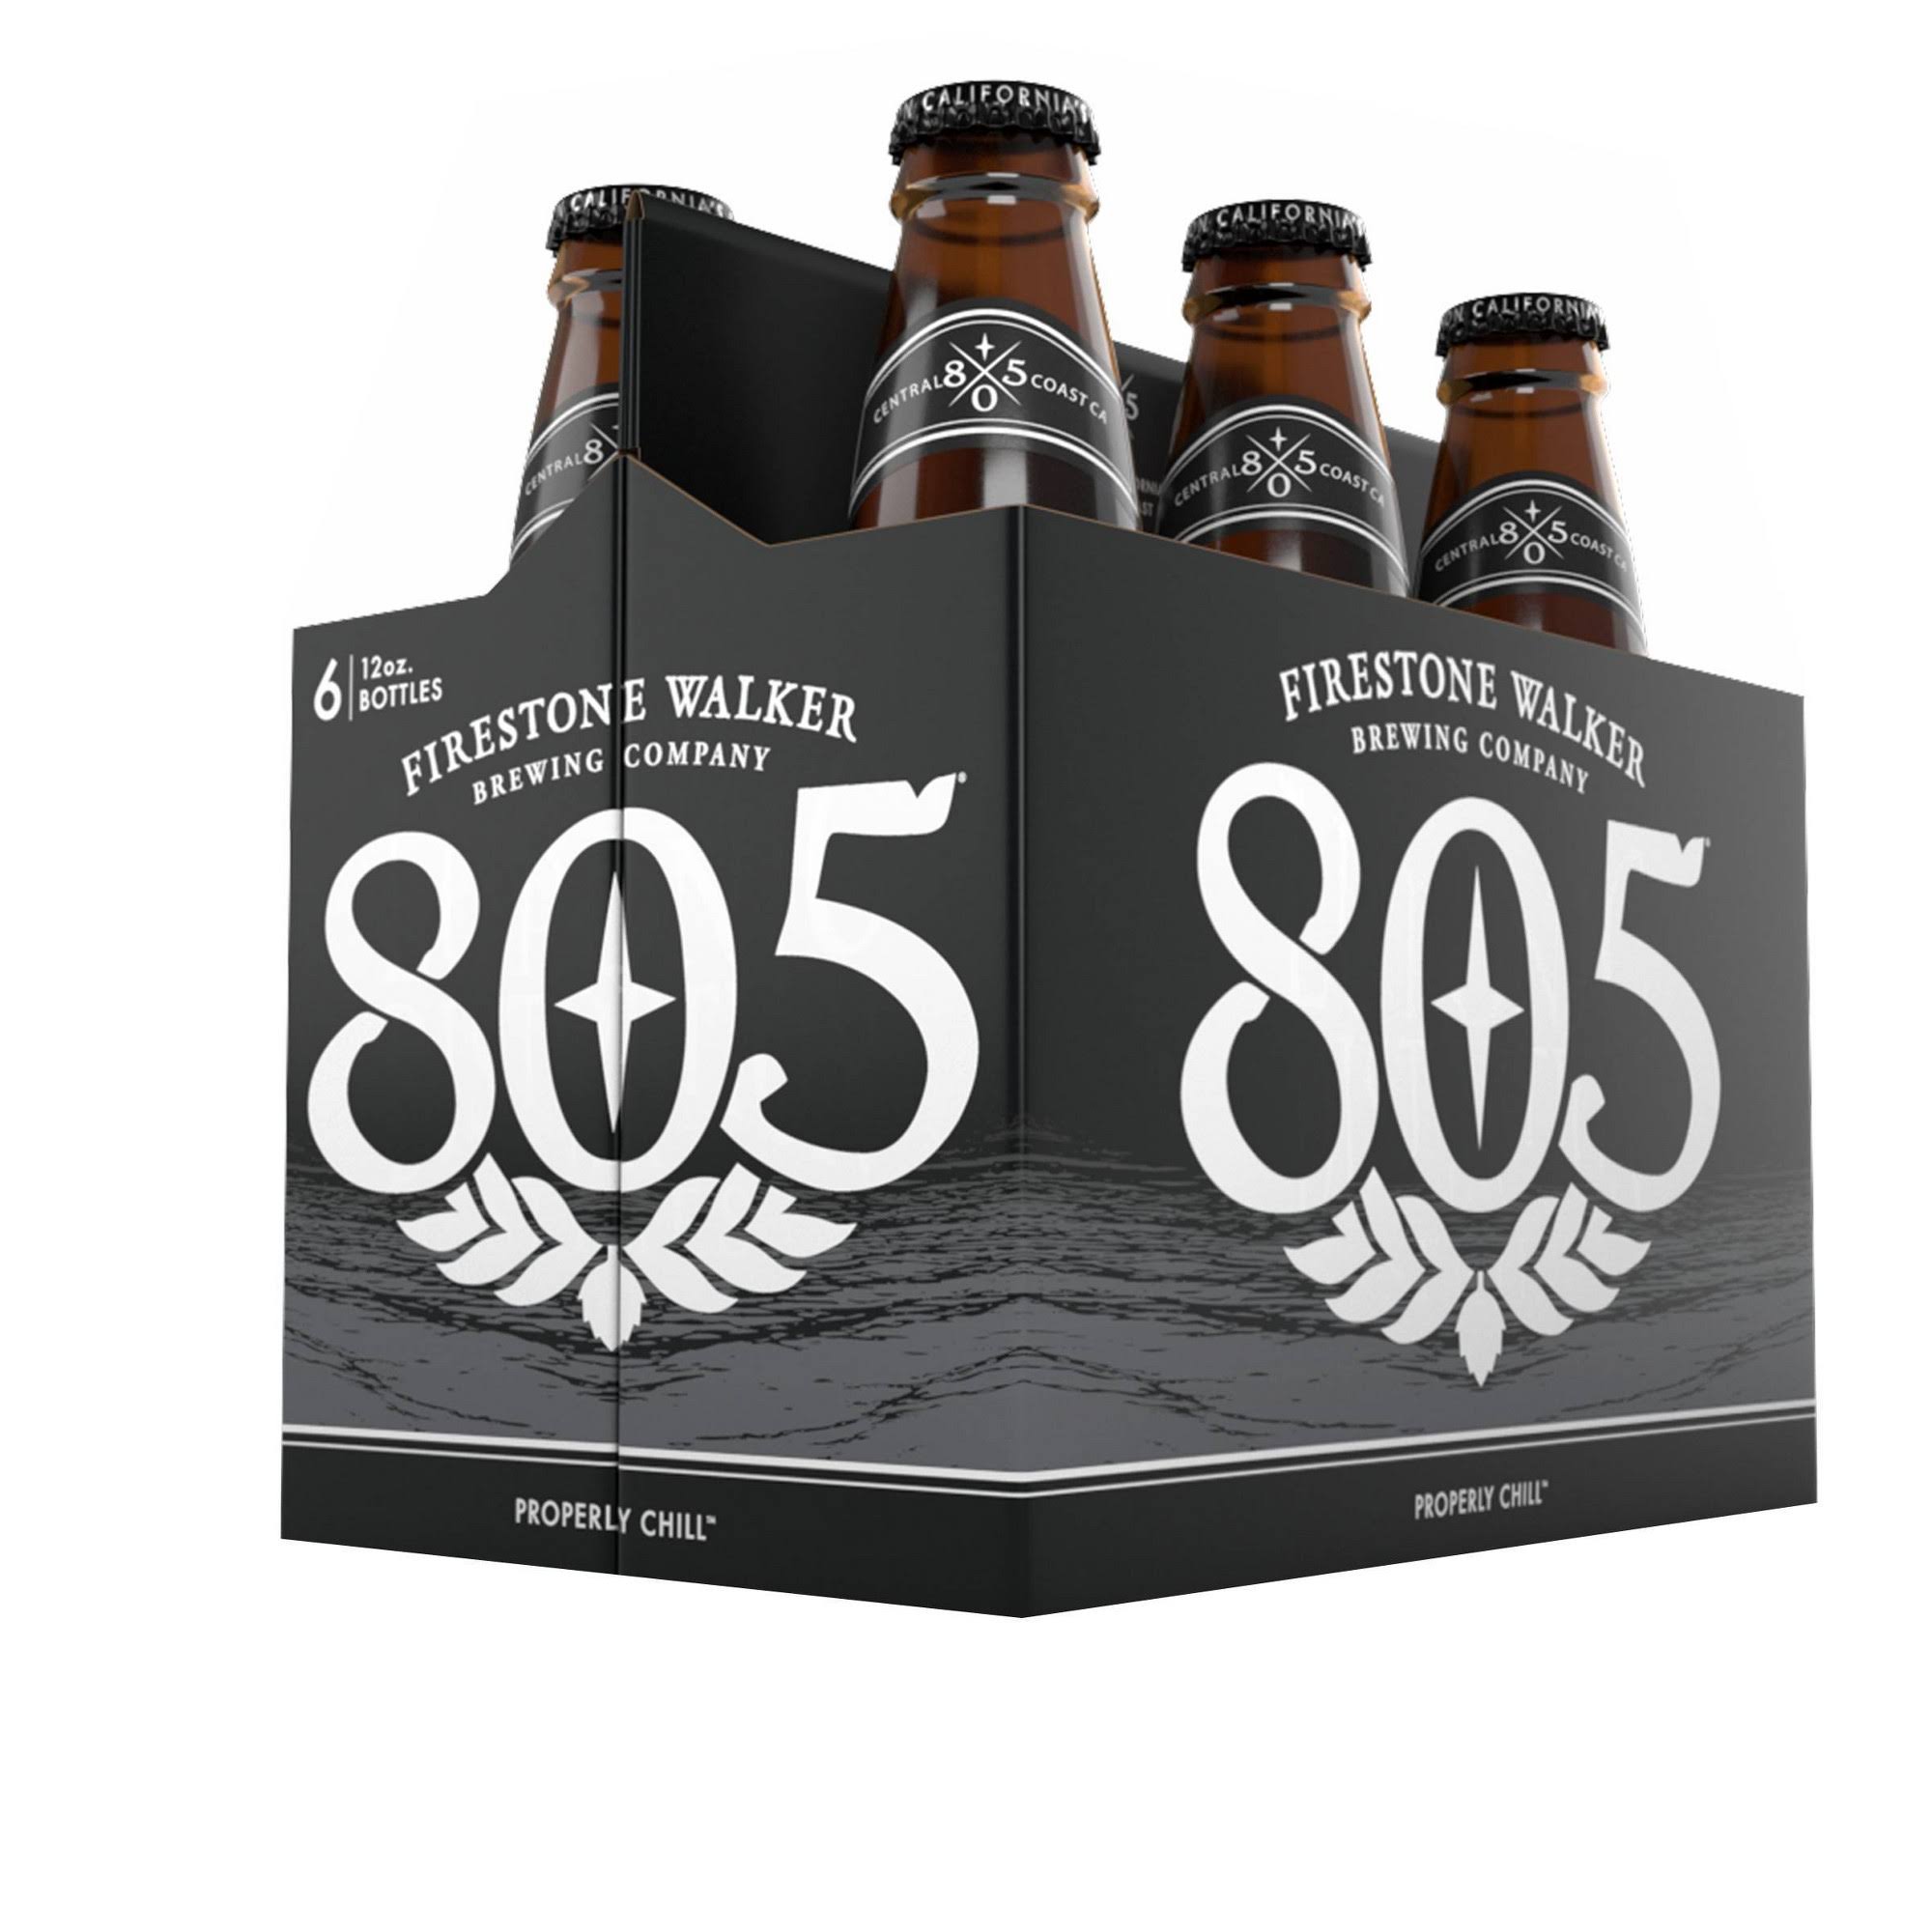 Firestone Walker Beer, 805 Properly Chill, 6 Pack - 6 - 12 bottles